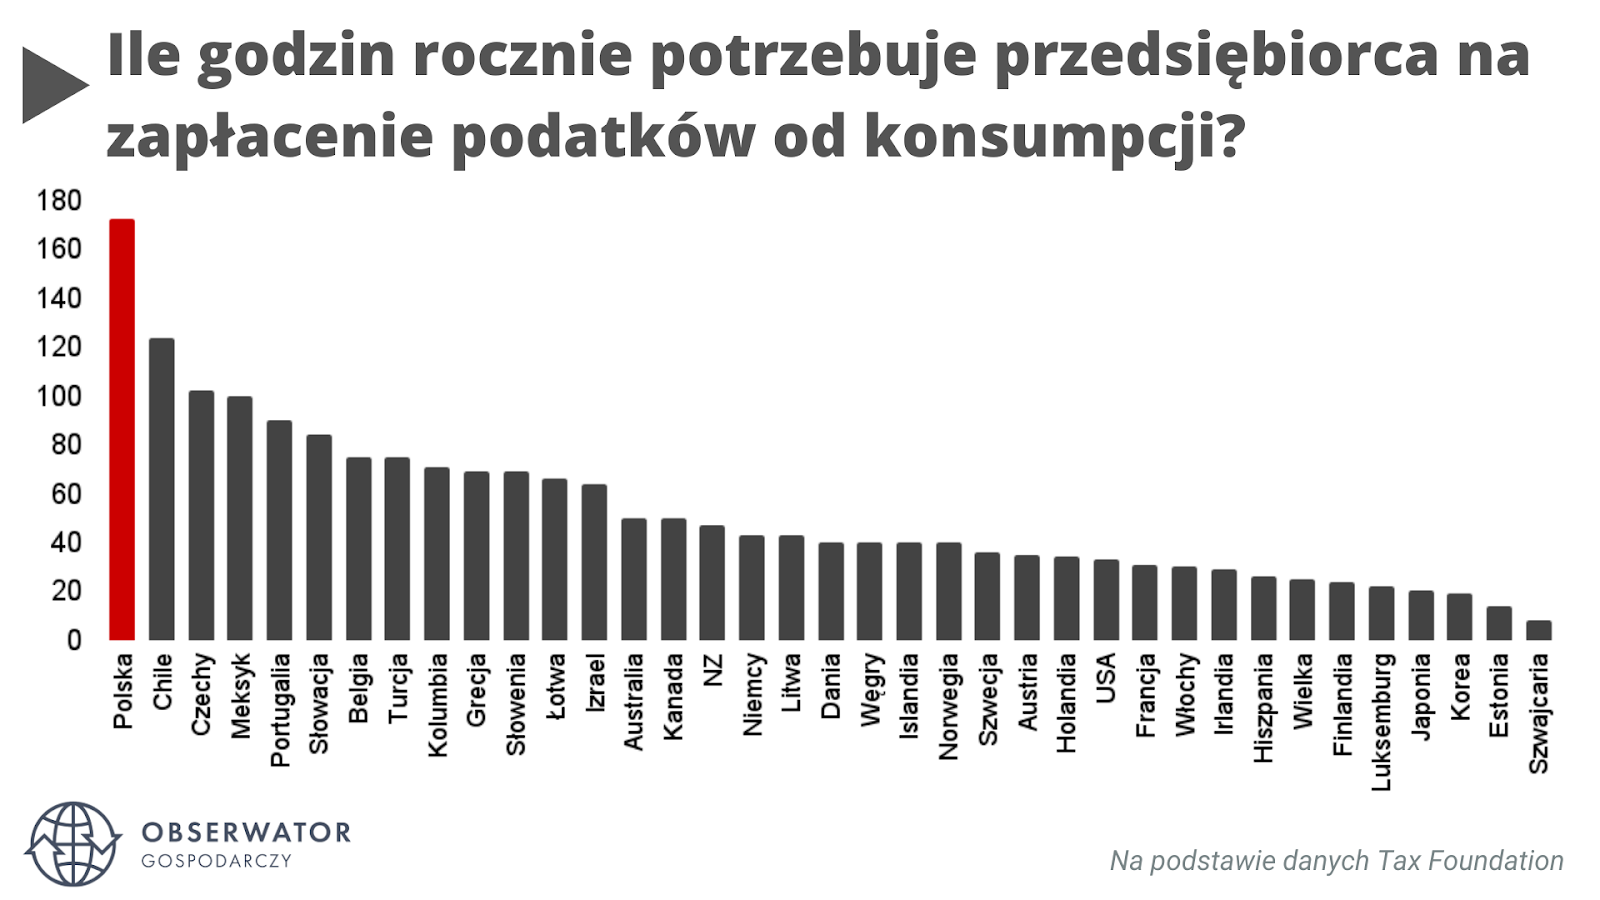 Ile godzin rocznie potrzebuje polski przedsiębiorca na zapłacenie podatków konsumpcyjnych?